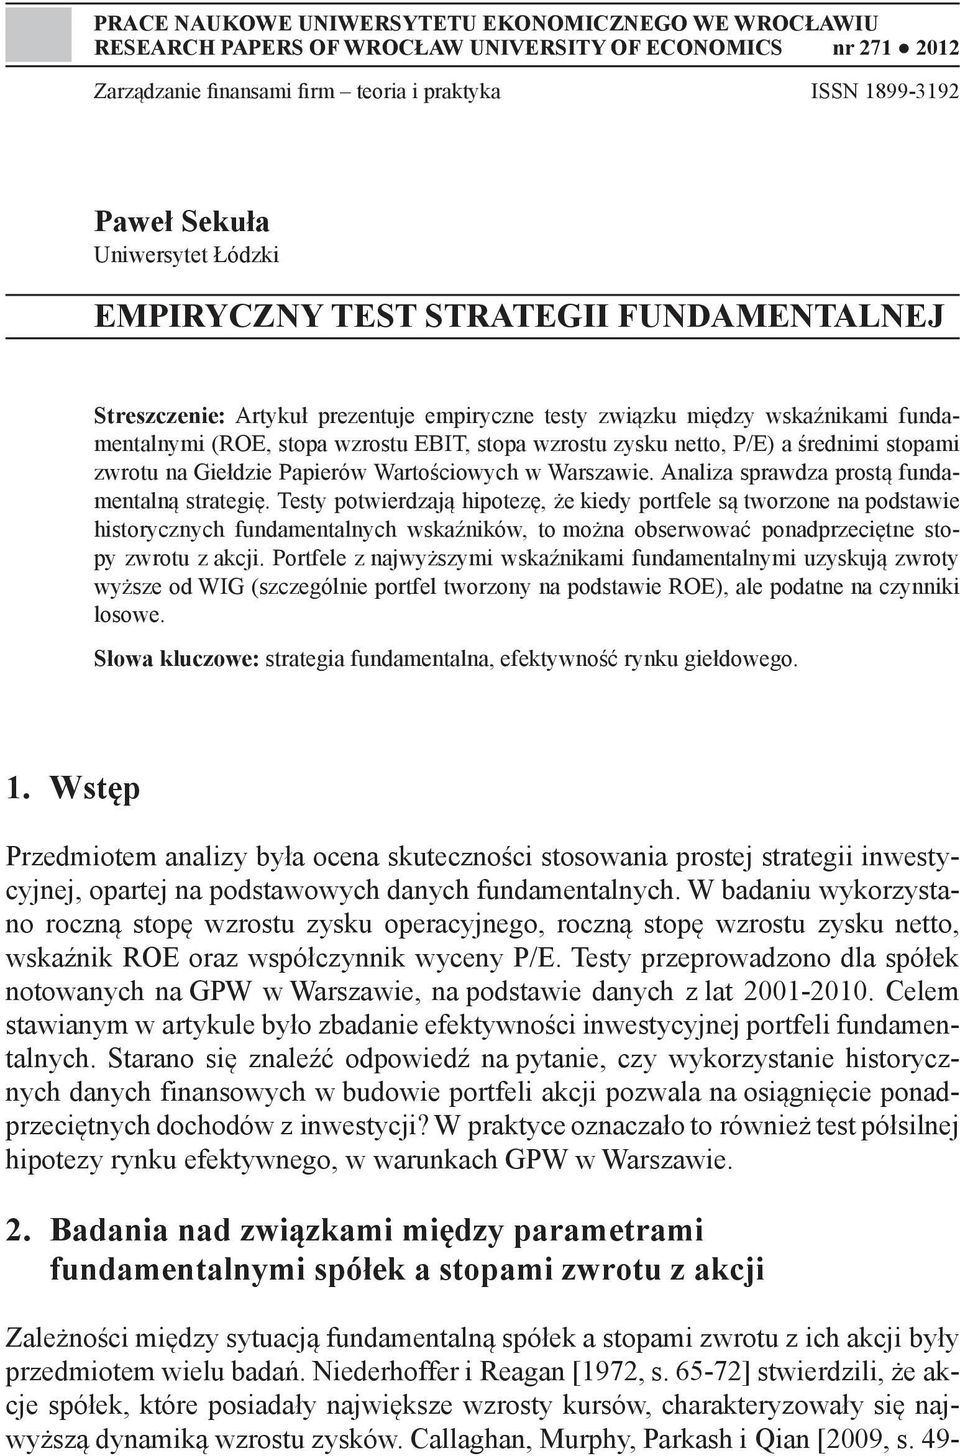 netto, P/E) a średnimi stopami zwrotu na Giełdzie Papierów Wartościowych w Warszawie. Analiza sprawdza prostą fundamentalną strategię.